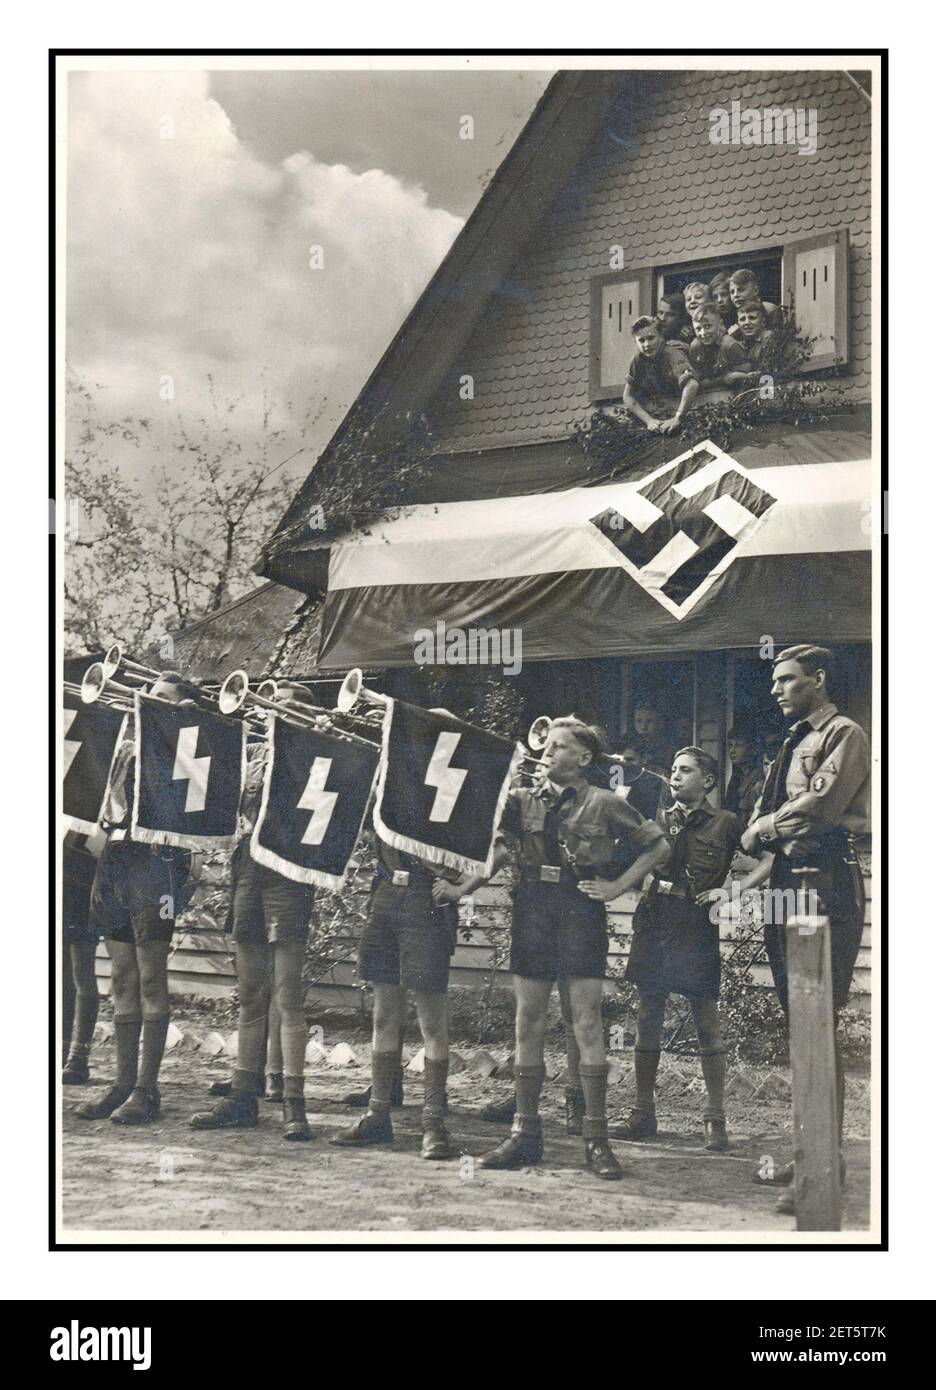 1930's Vintage Hitler Youth nazista Propaganda immagine dei ragazzi Hitler Jugend in un viaggio a tema nazista, soffiando un fanfare sulla sfilata che mostra swastika e simboli militari Germania 1934 Foto Stock